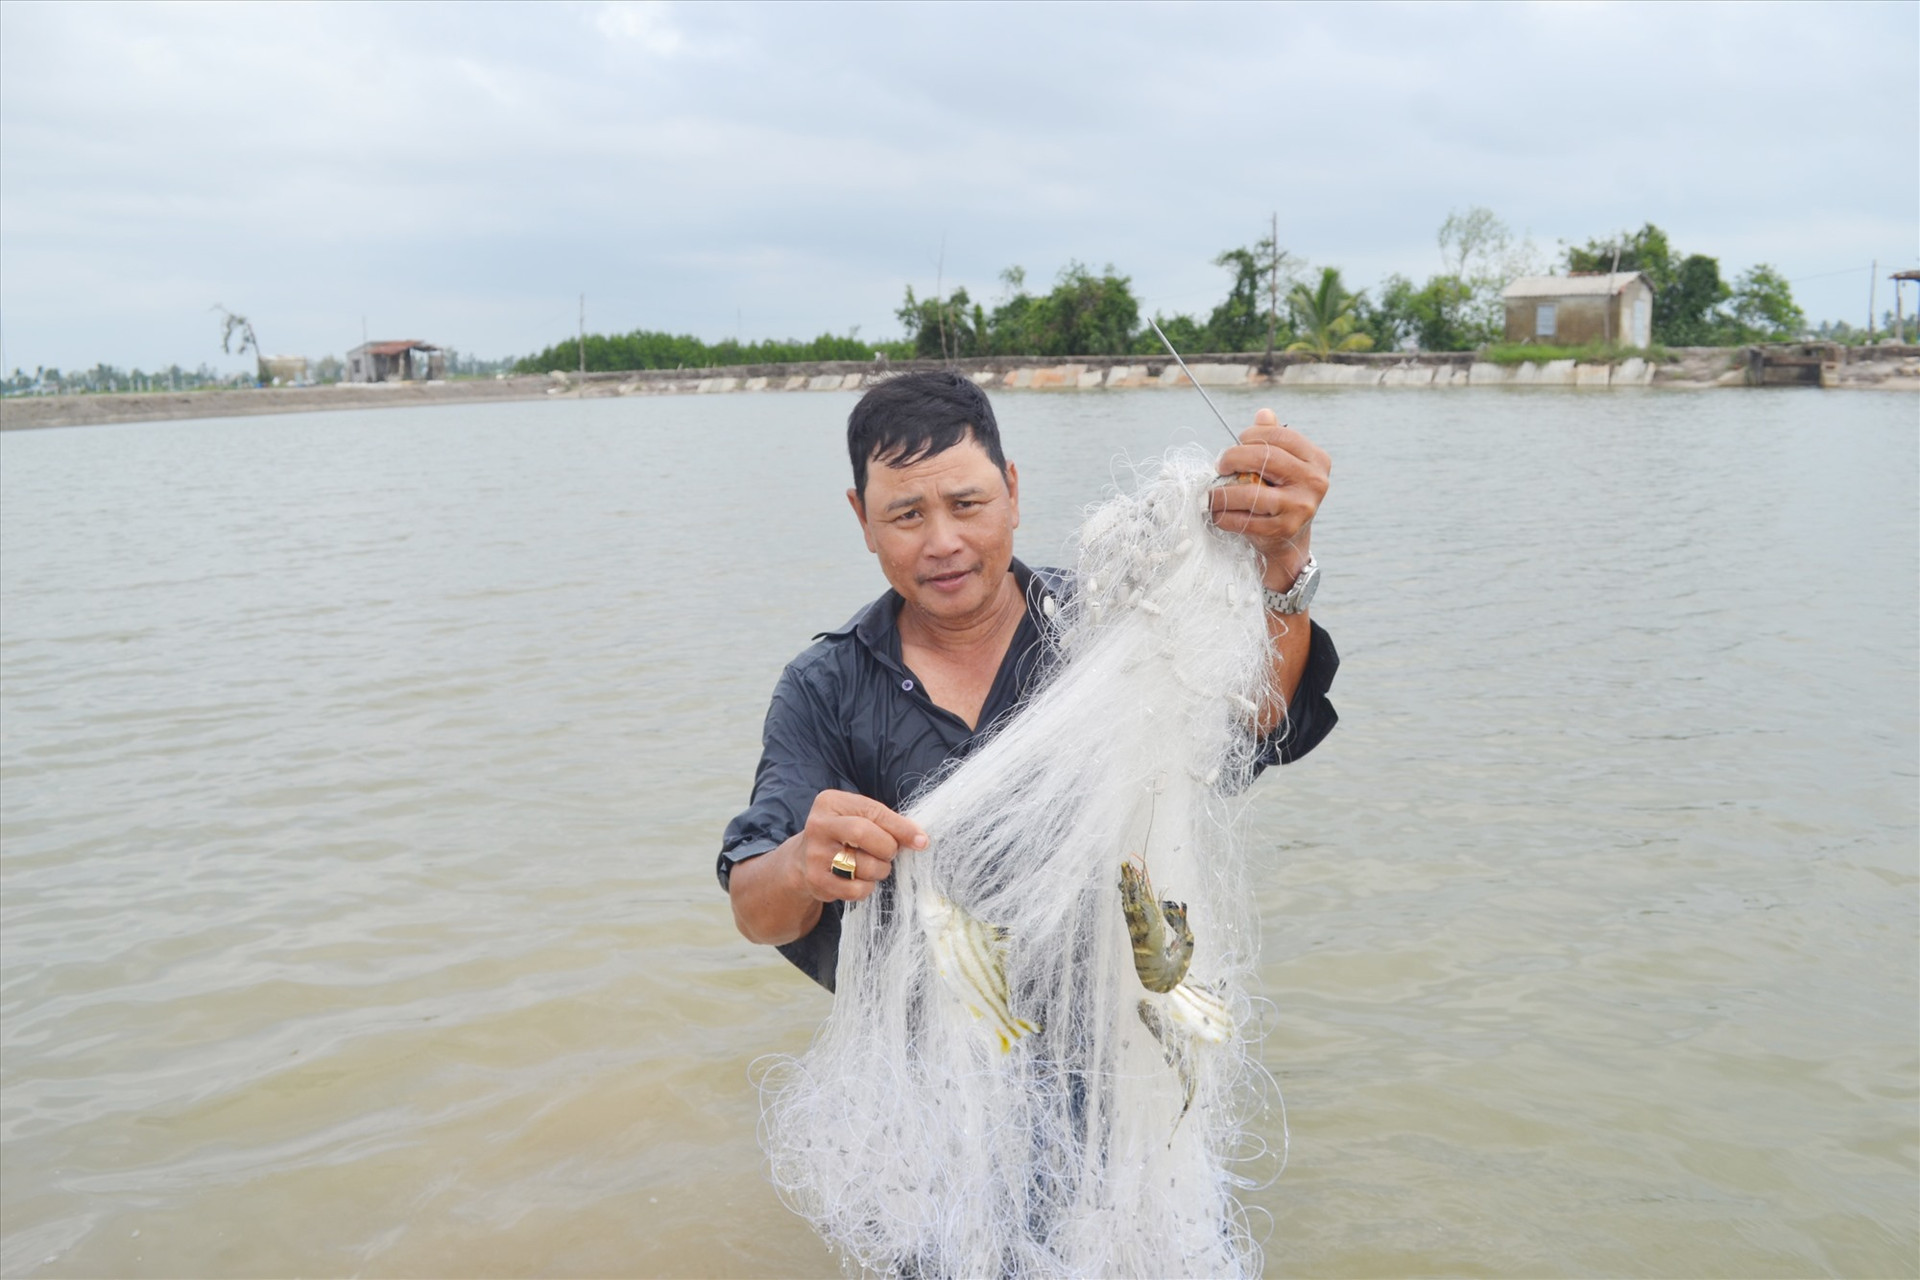 Hộ ông Dương Thanh Quý (thôn Long Bình, xã Tam Nghĩa) đã có nguồn thu nhập ổn định sau khi chuyển nuôi tôm thẻ chân trắng sang nuôi các loại tôm càng xanh, cua biển, cá dìa, cá chẽm. Ảnh: NGUYỄN QUANG